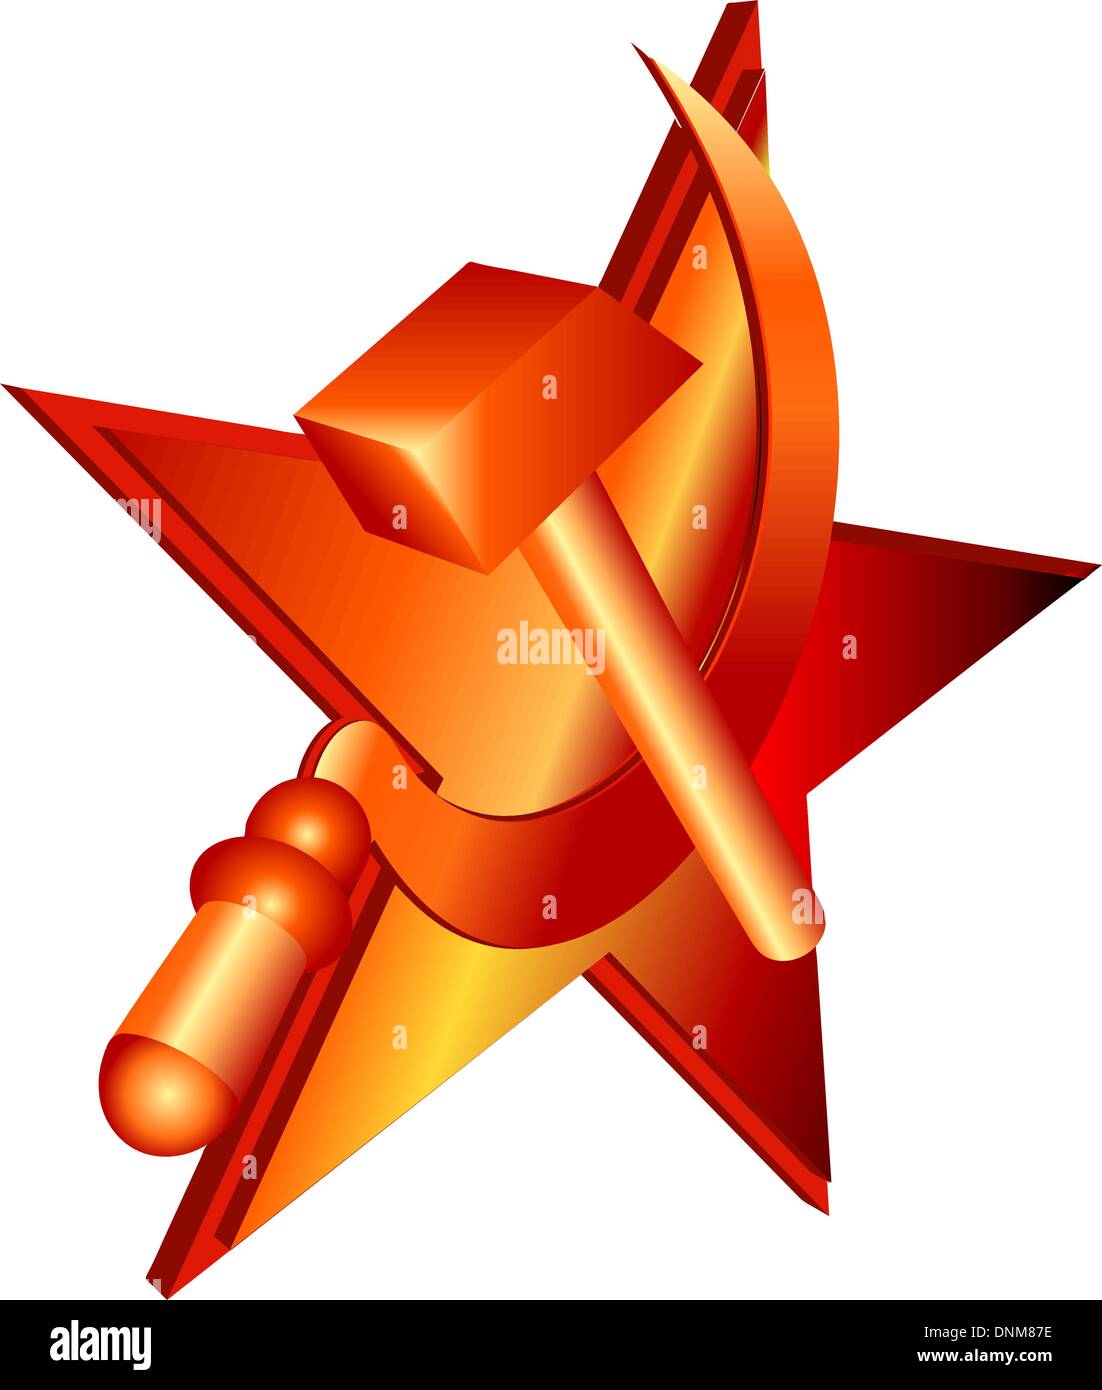 Vektor Hammer und Sichel, kommunistische Symbol. Stock Vektor